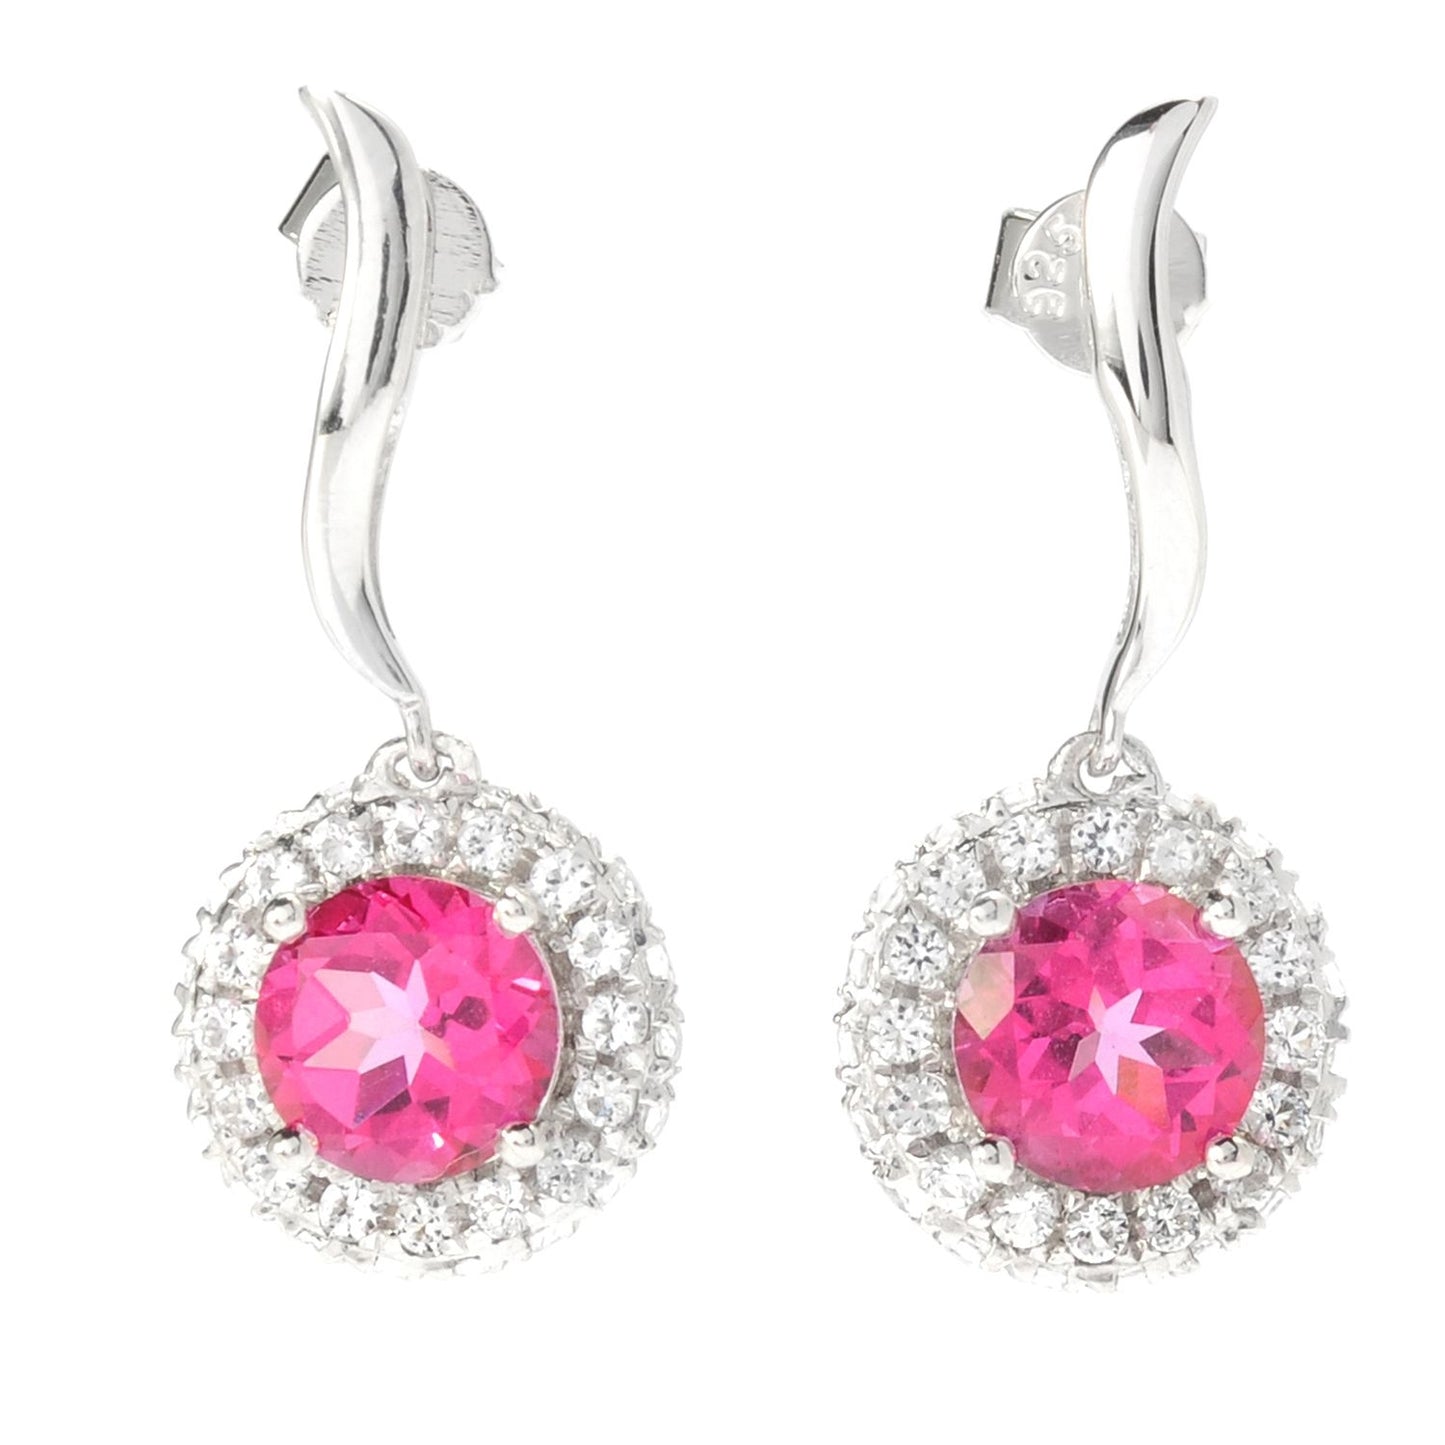 Sterling Silver 4.18Ctw Pink Topaz Halo Drop Earrings, 1"L